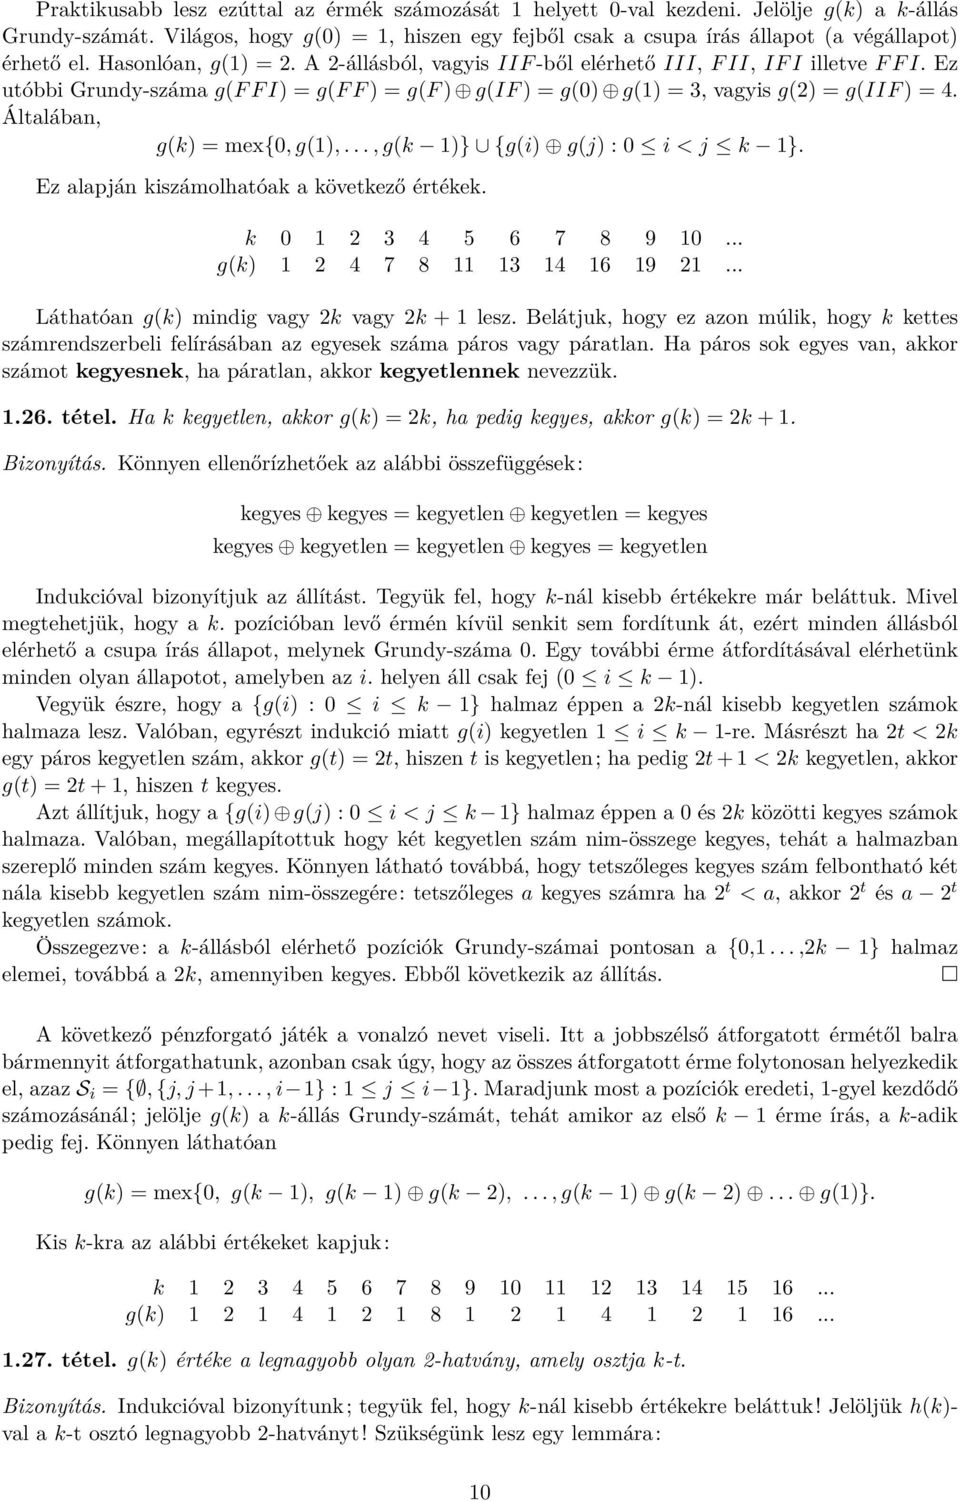 Ez utóbbi Grundy-száma g(f F I) = g(f F ) = g(f ) g(if ) = g(0) g(1) = 3, vagyis g(2) = g(iif ) = 4. Általában, g(k) = mex{0, g(1),..., g(k 1)} {g(i) g(j) : 0 i < j k 1}.